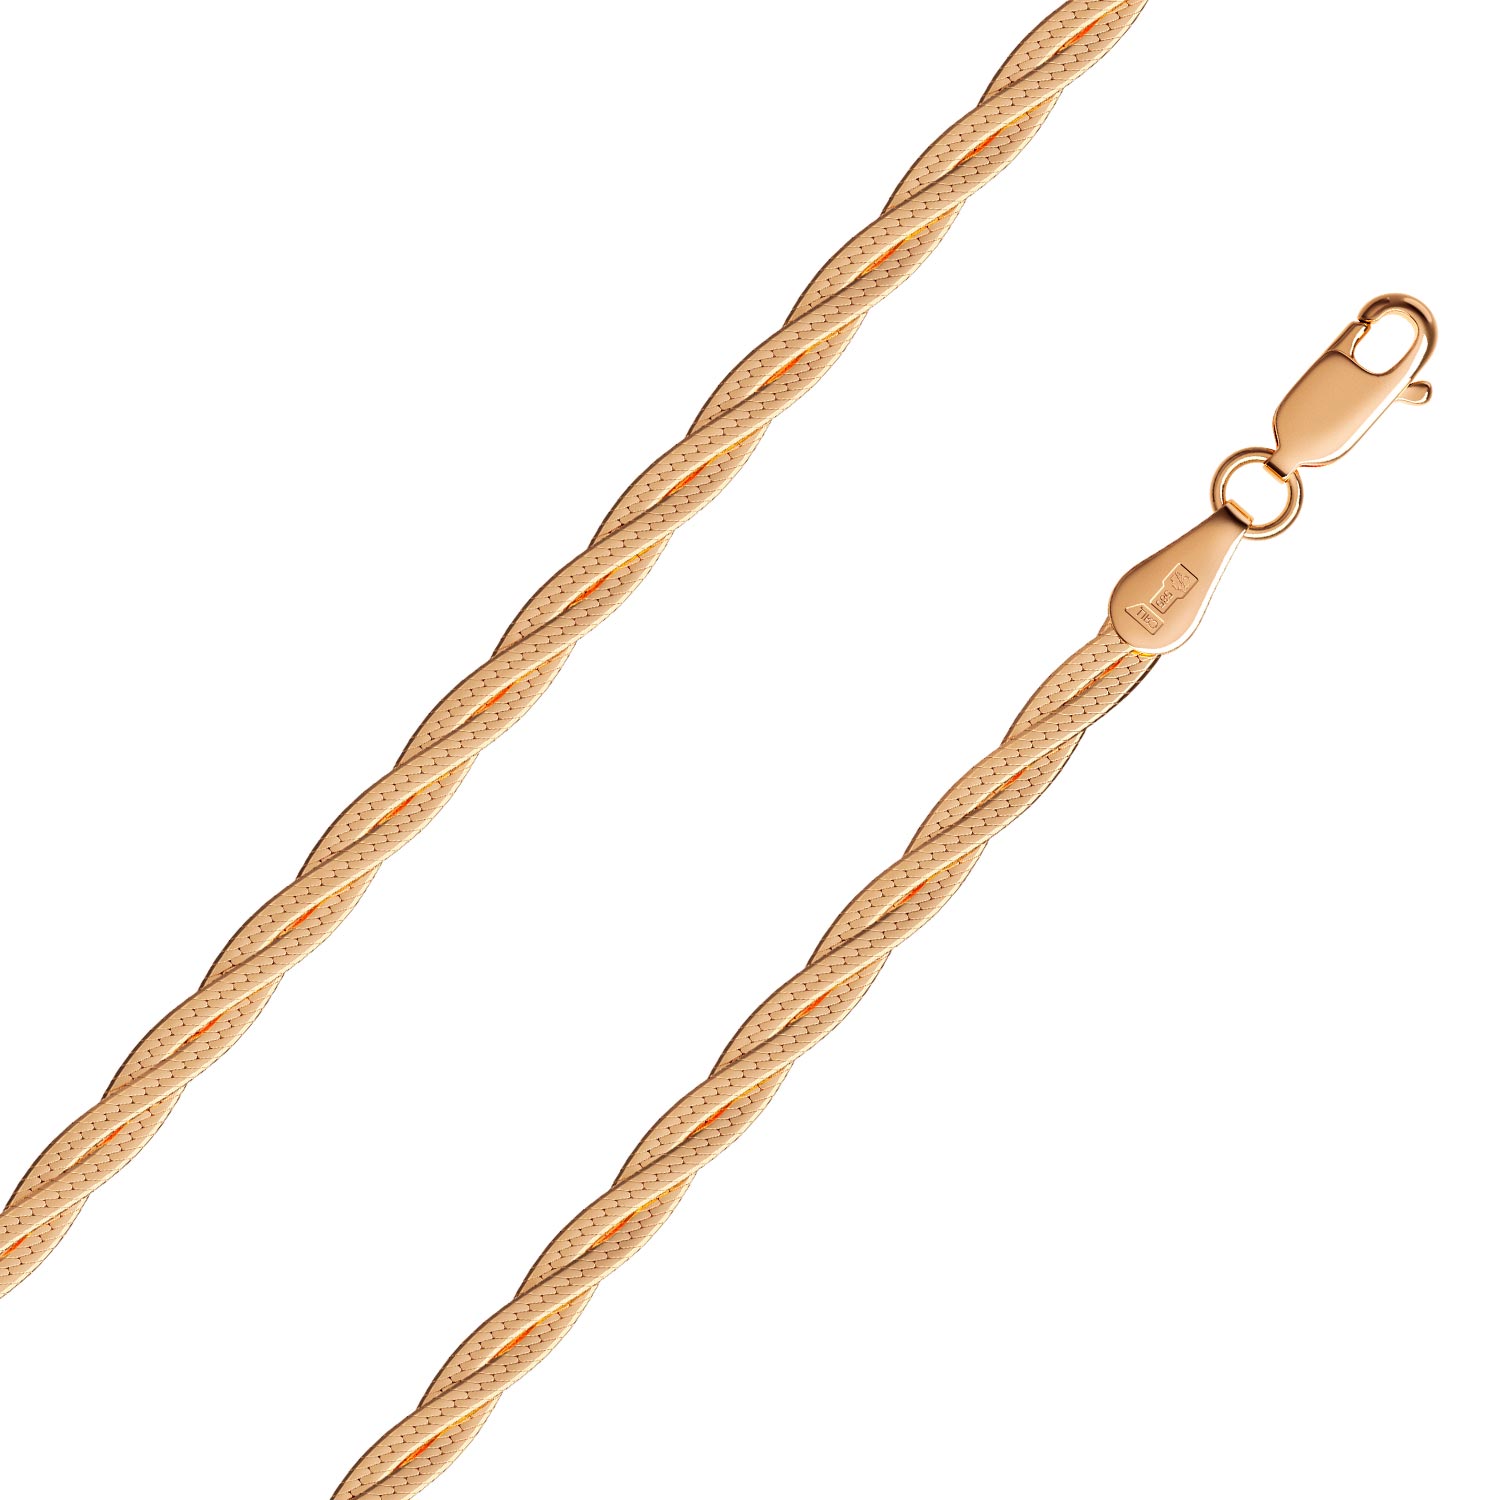 Золотая цепочка на шею Krastsvetmet NC-12-025-0-30 с плетением косичка —купить в AllTime.ru — фото